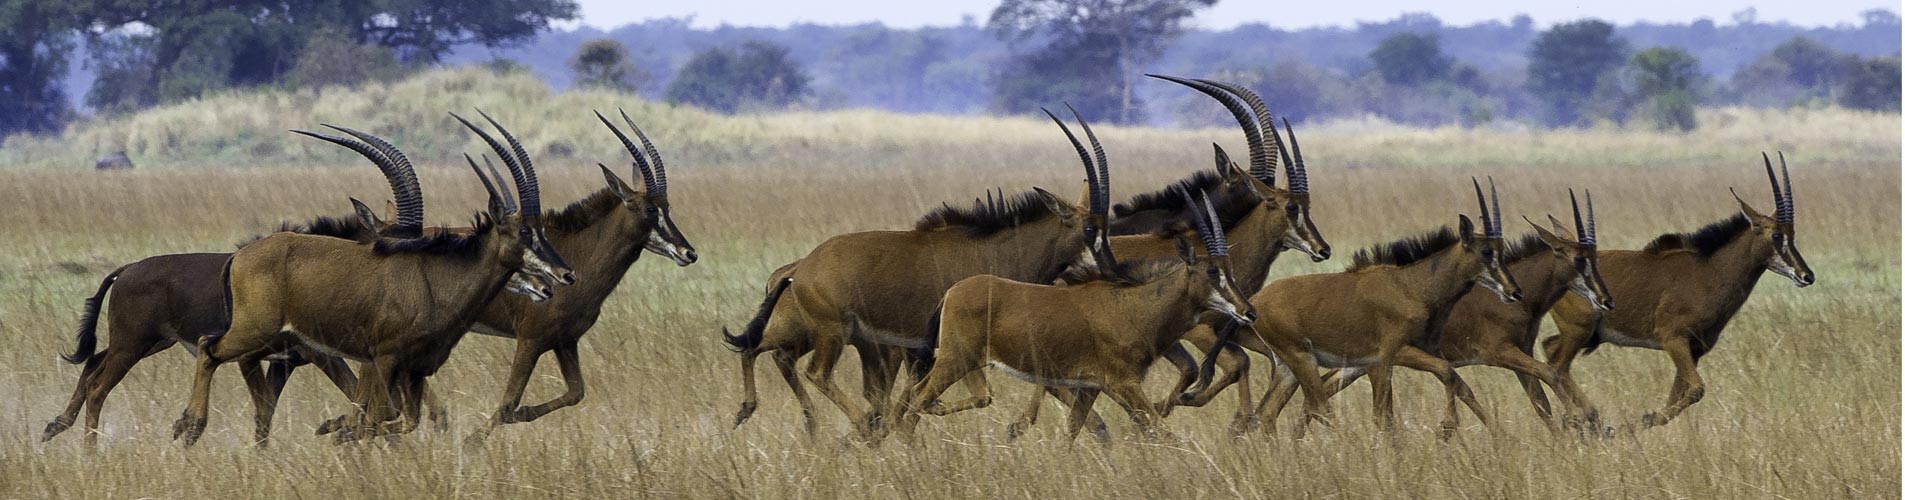 Zambia Safaris Busanga Plains